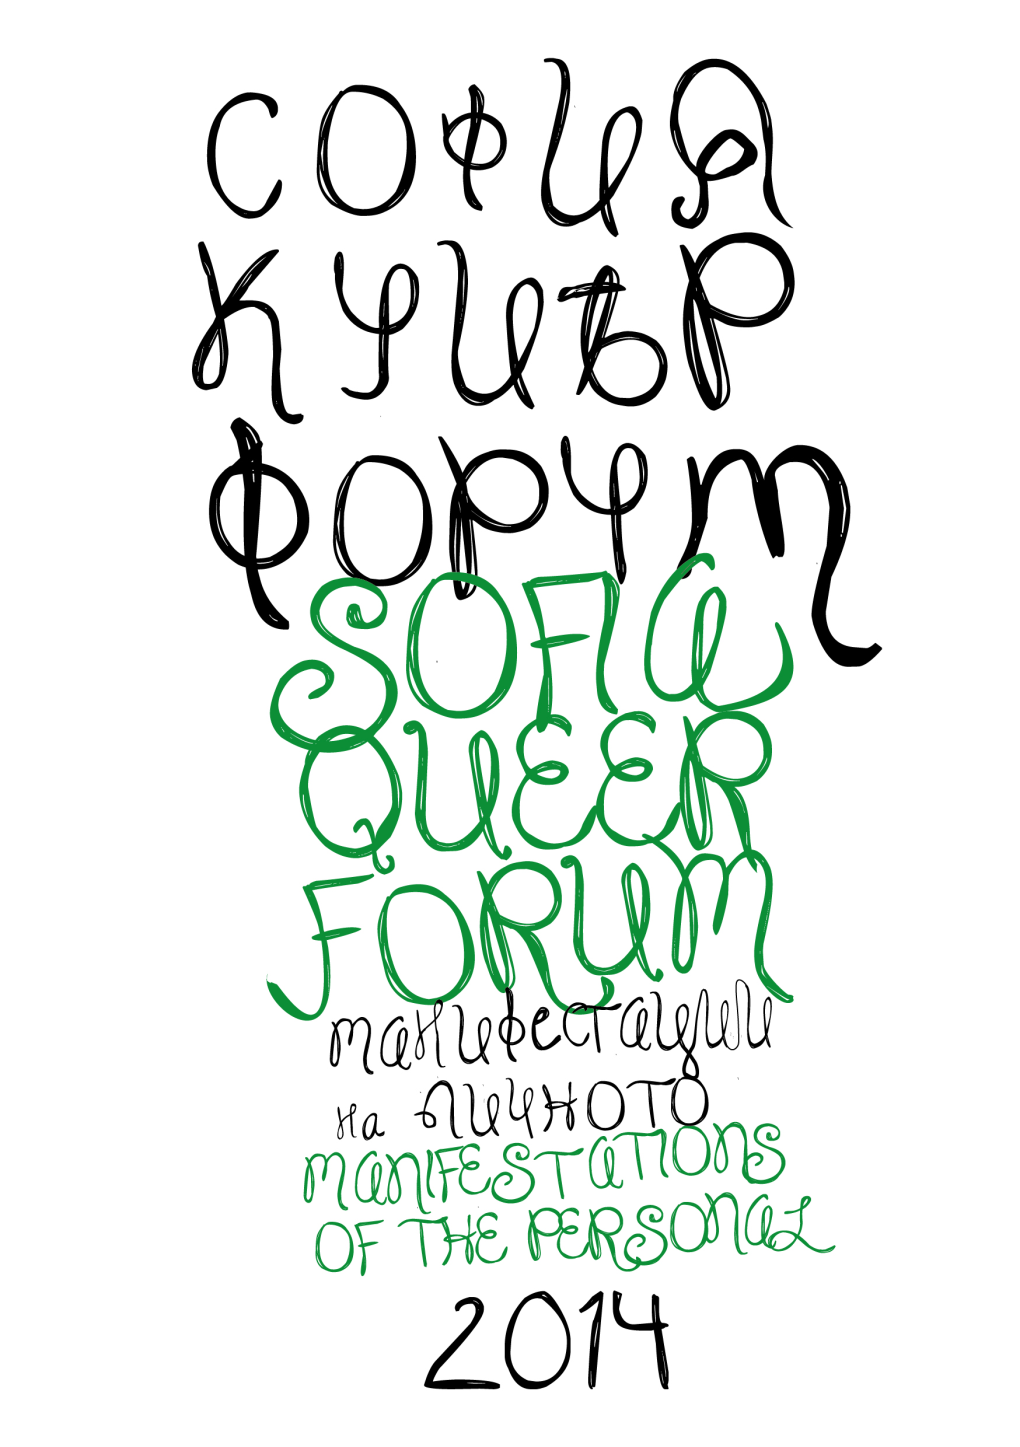 Sofia Queer Forum